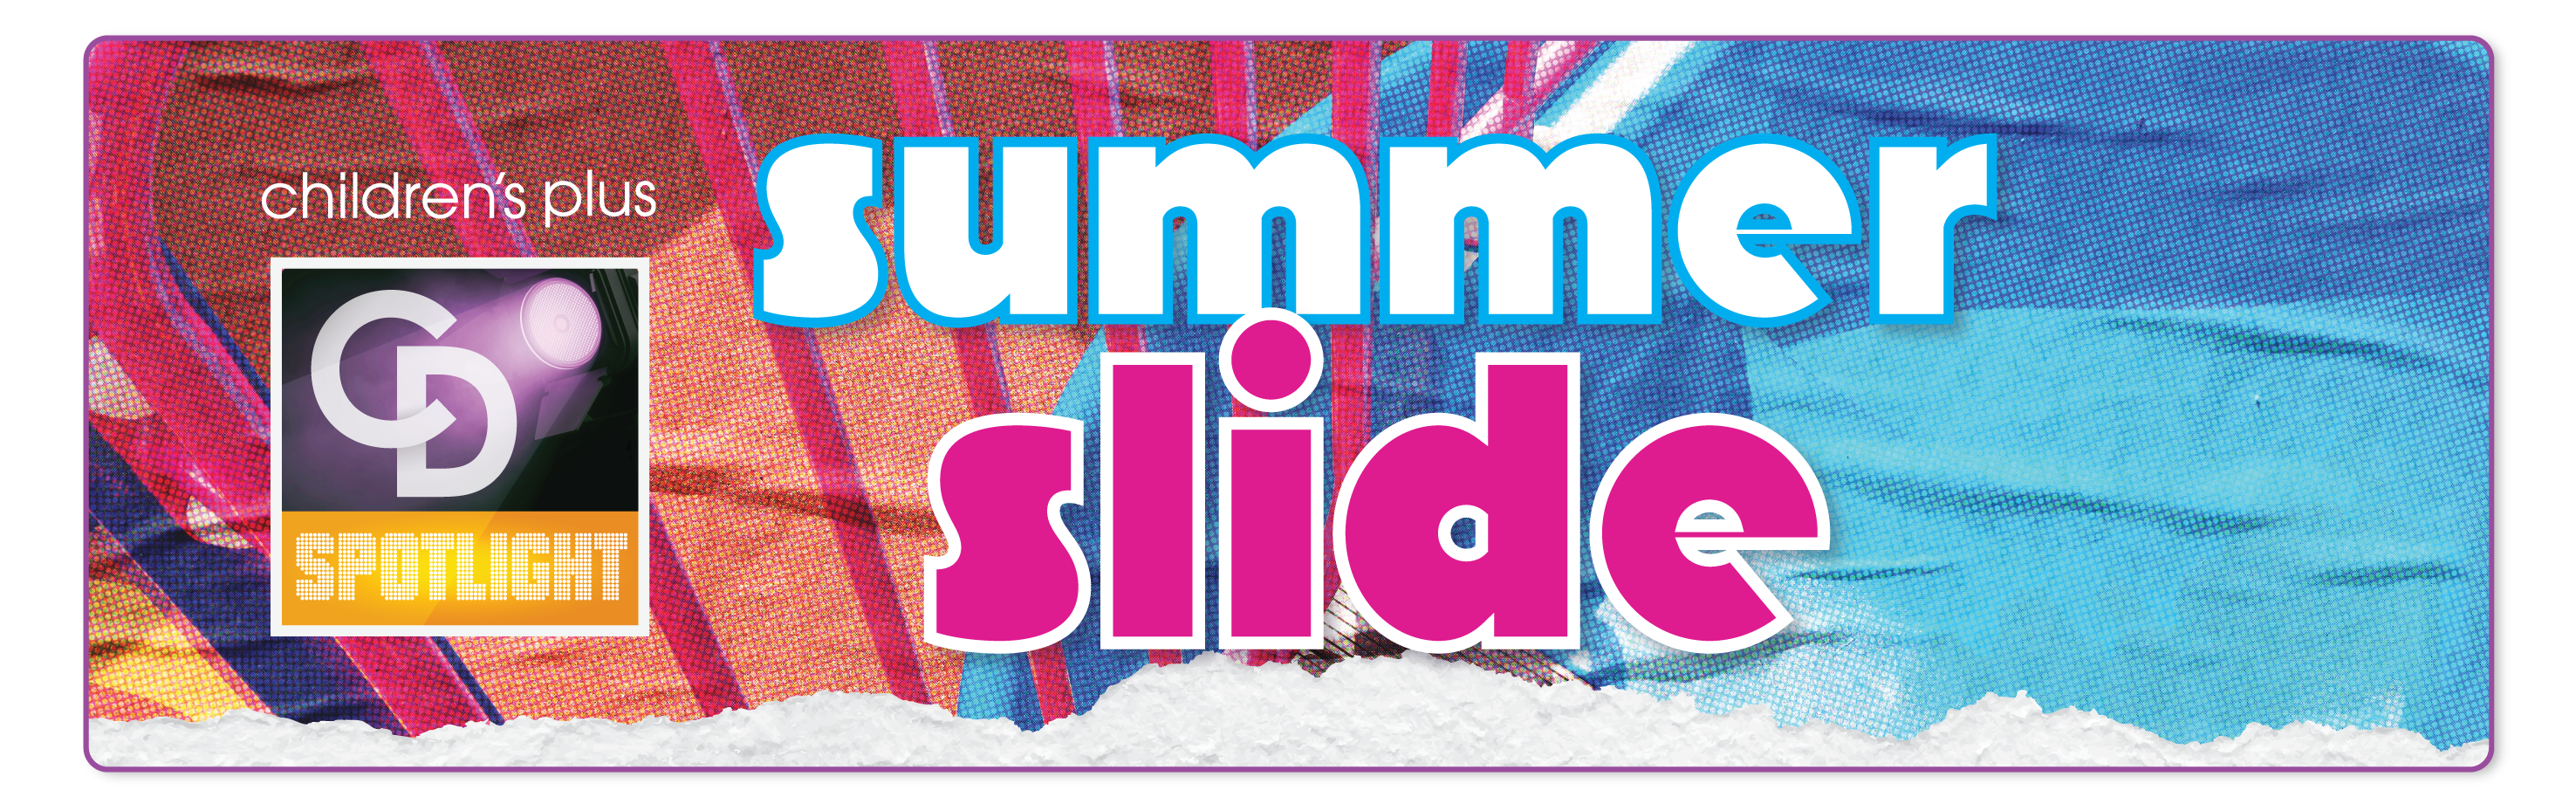 CD Spotlight Summer Slide